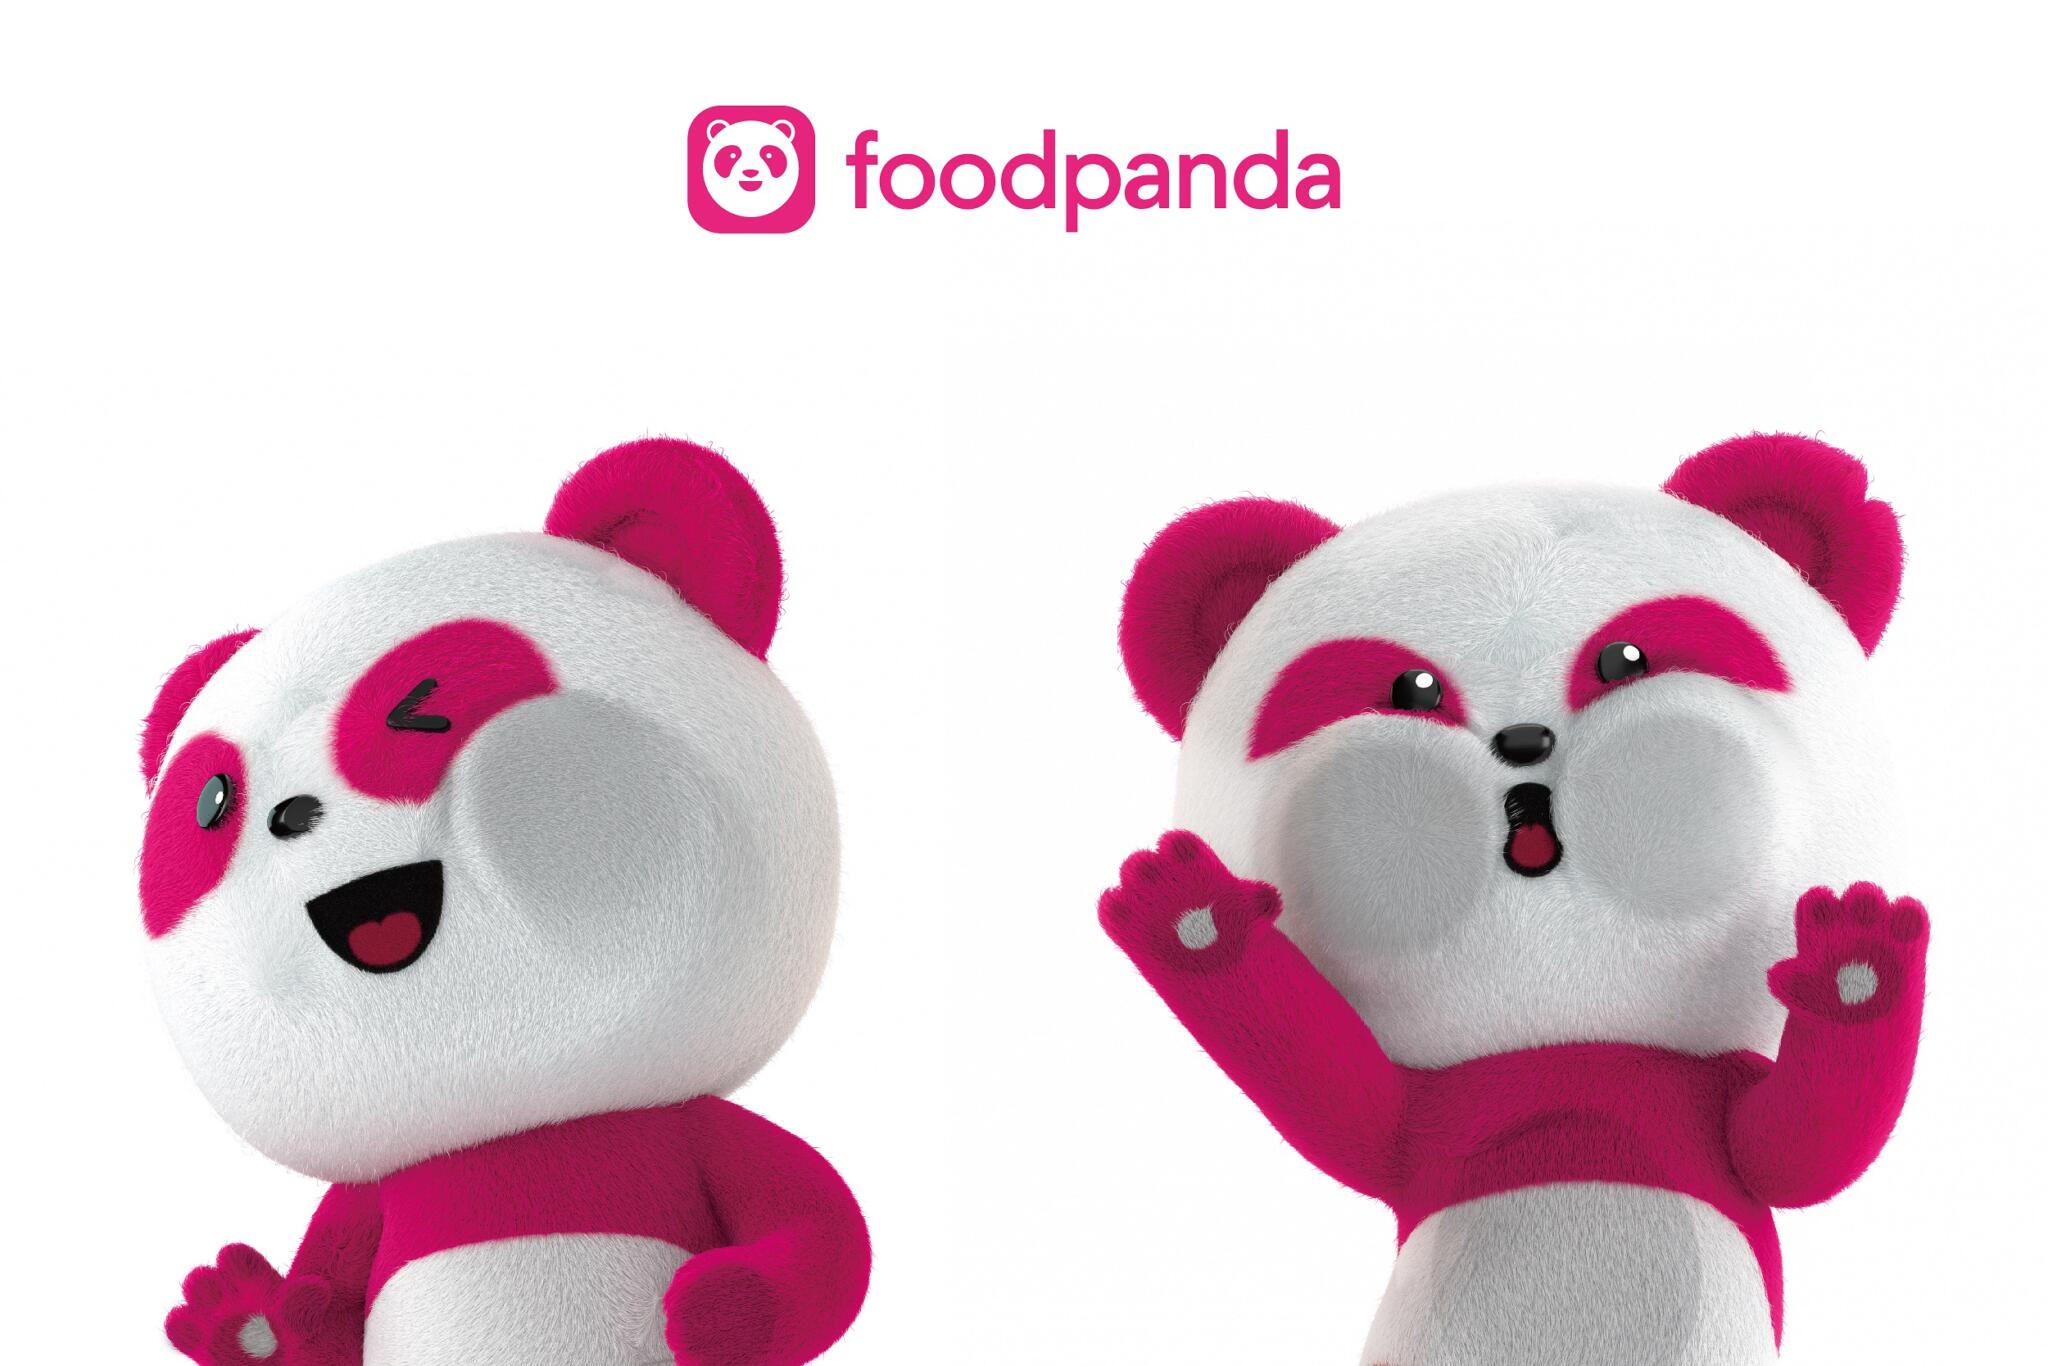 【有影】foodpanda首位品牌大使曝光 「胖胖達」首亮相加碼送10次免運優惠